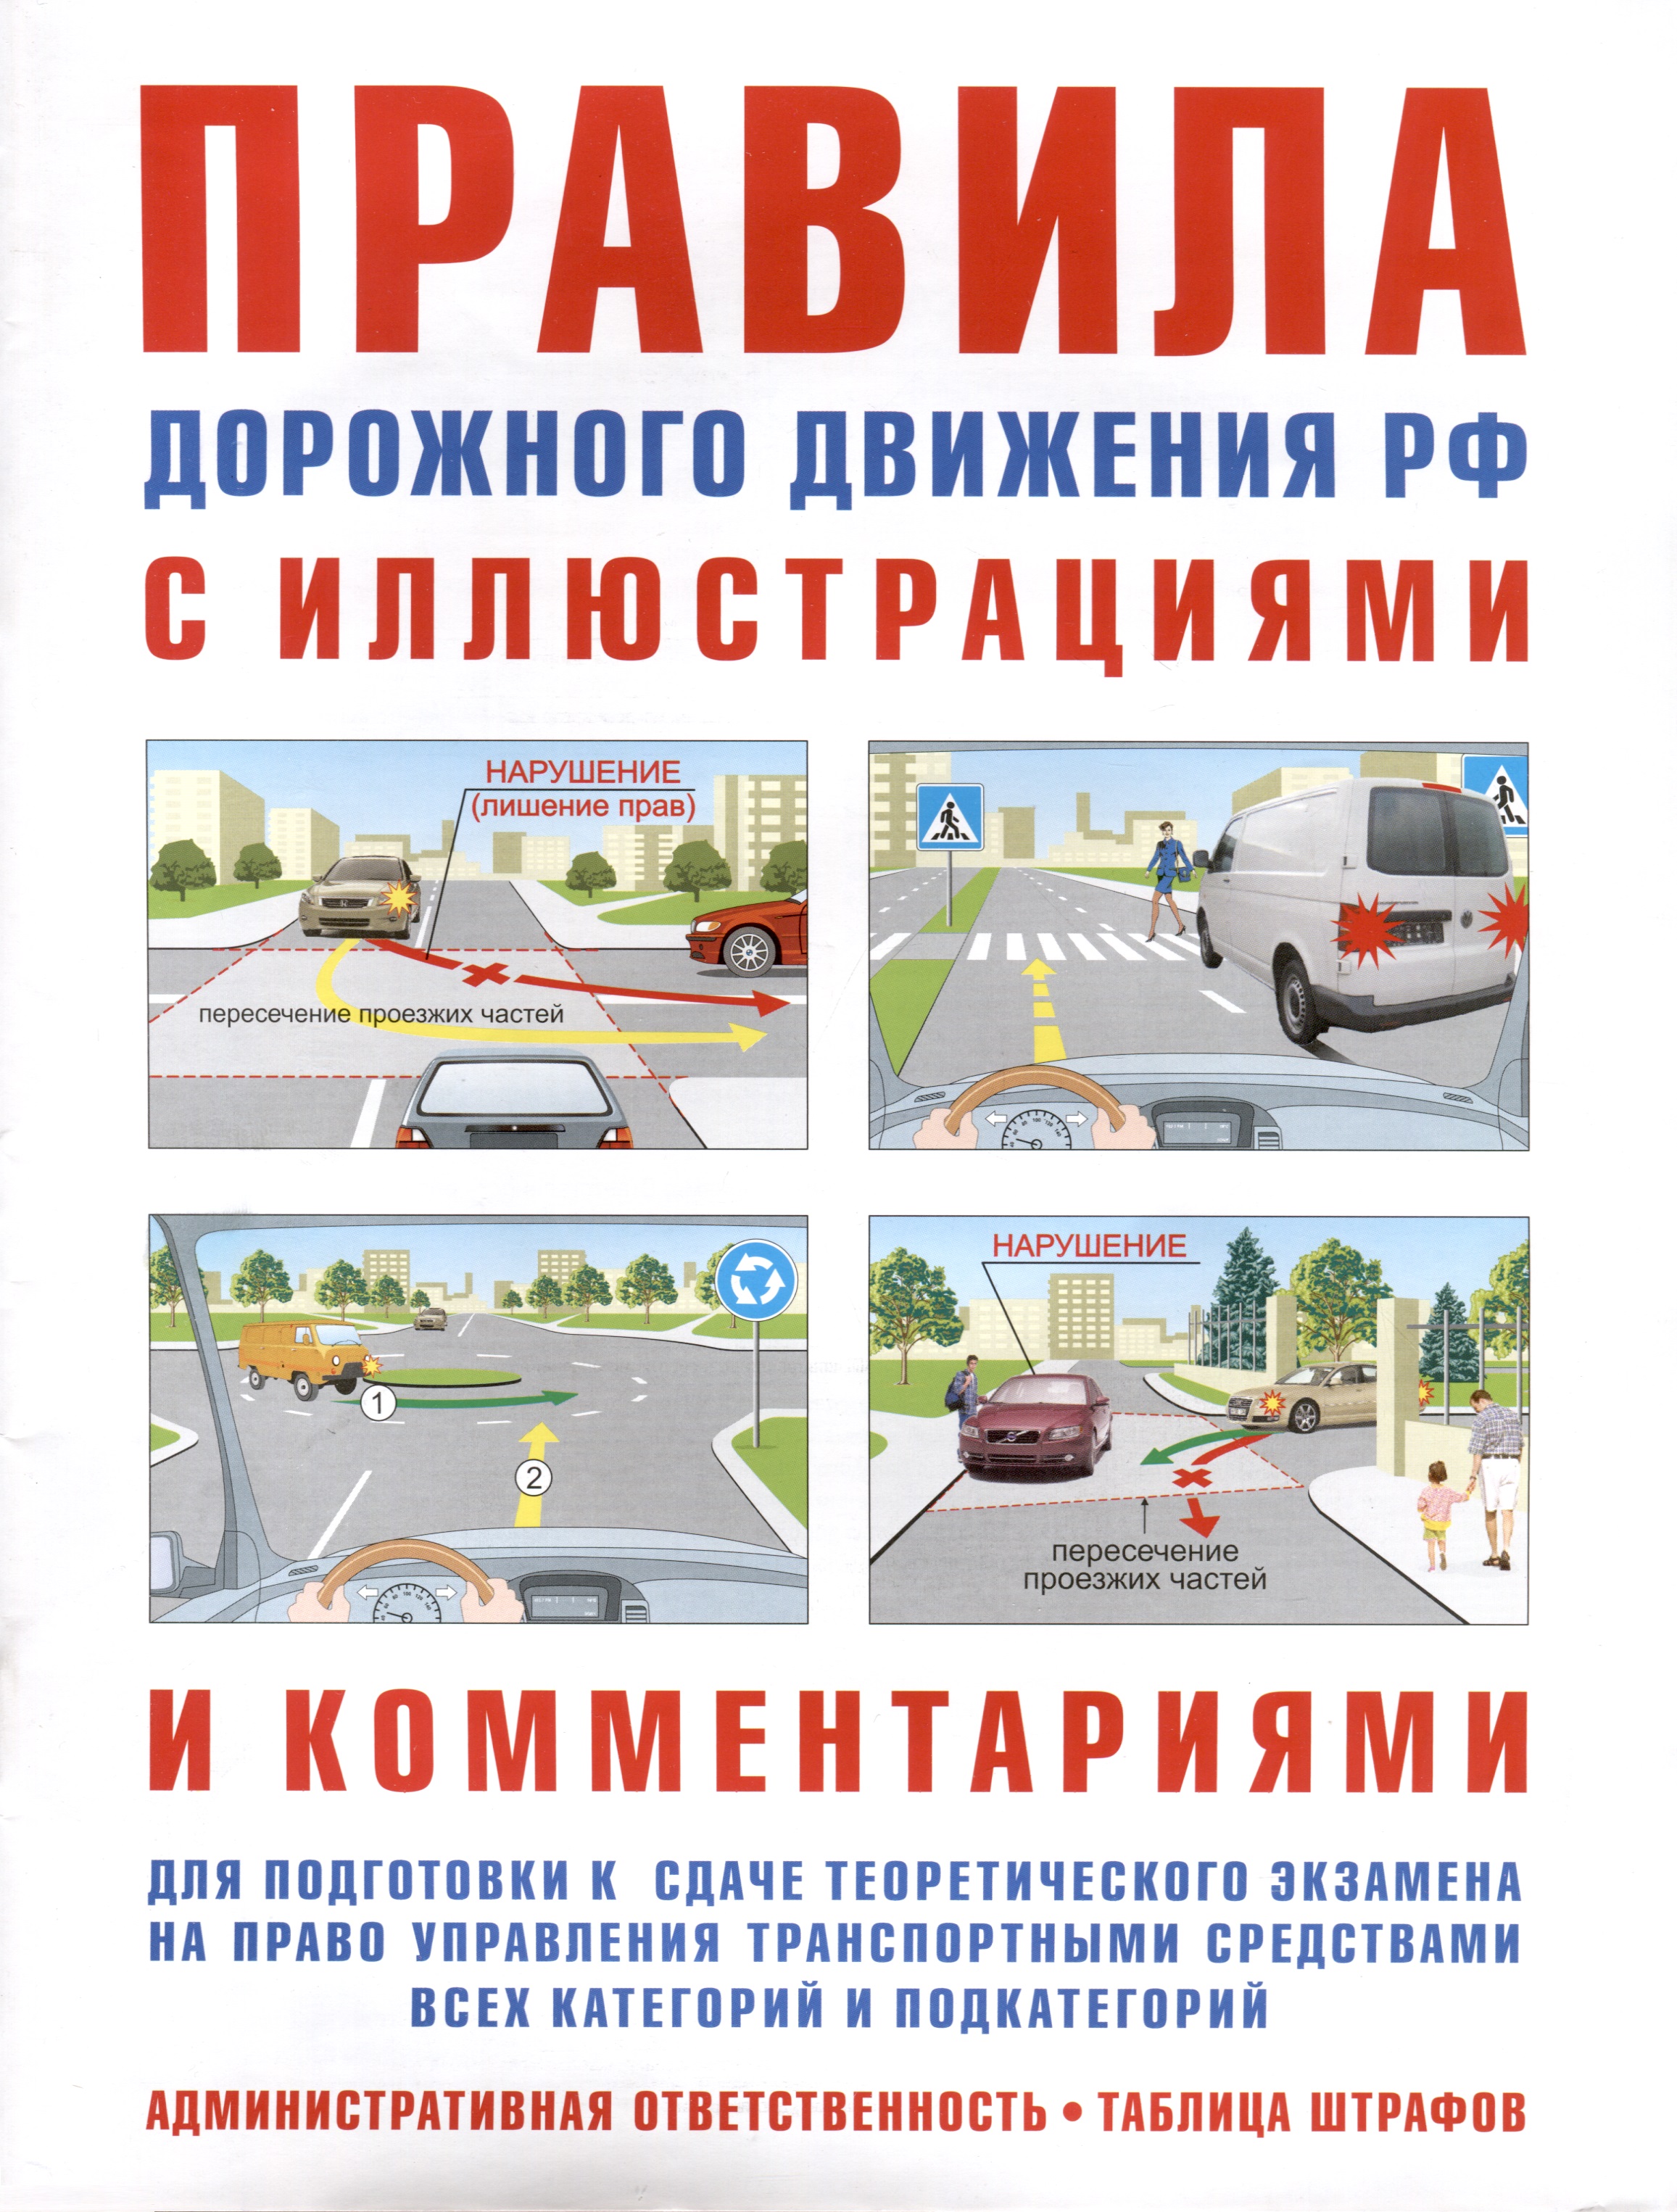 Правила дорожного движения с иллюстрациями и комментариями. Ответственность водителей (таблица штрафов и наказаний)